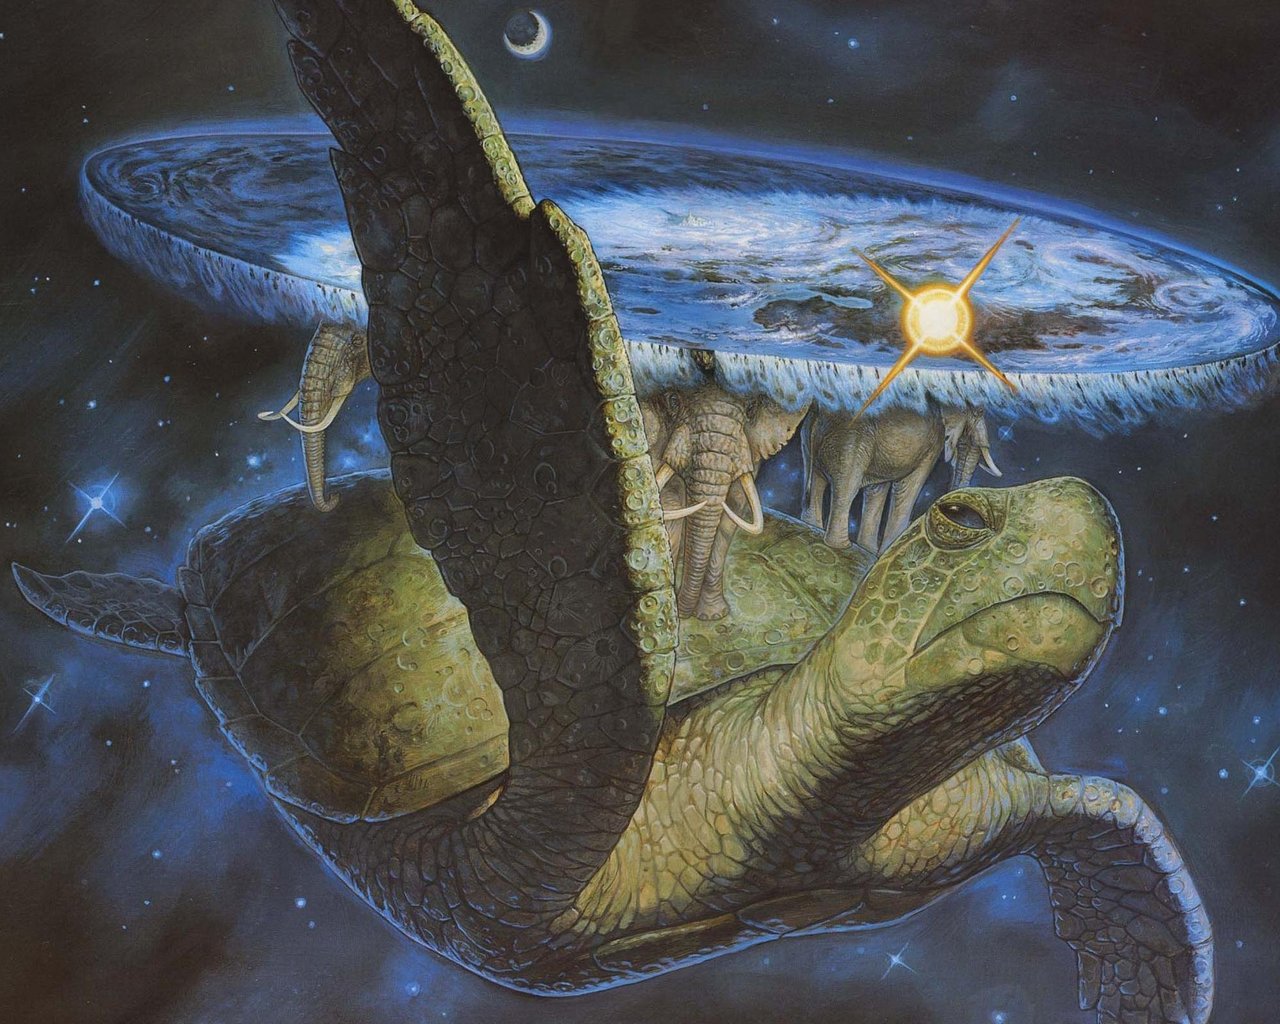 3d обои Плоский мир терри пратчетта-черепаха, на ней слоны, на слонах-плоская Земля, на неё сверху светят Солнце и Луна  солнце # 81986